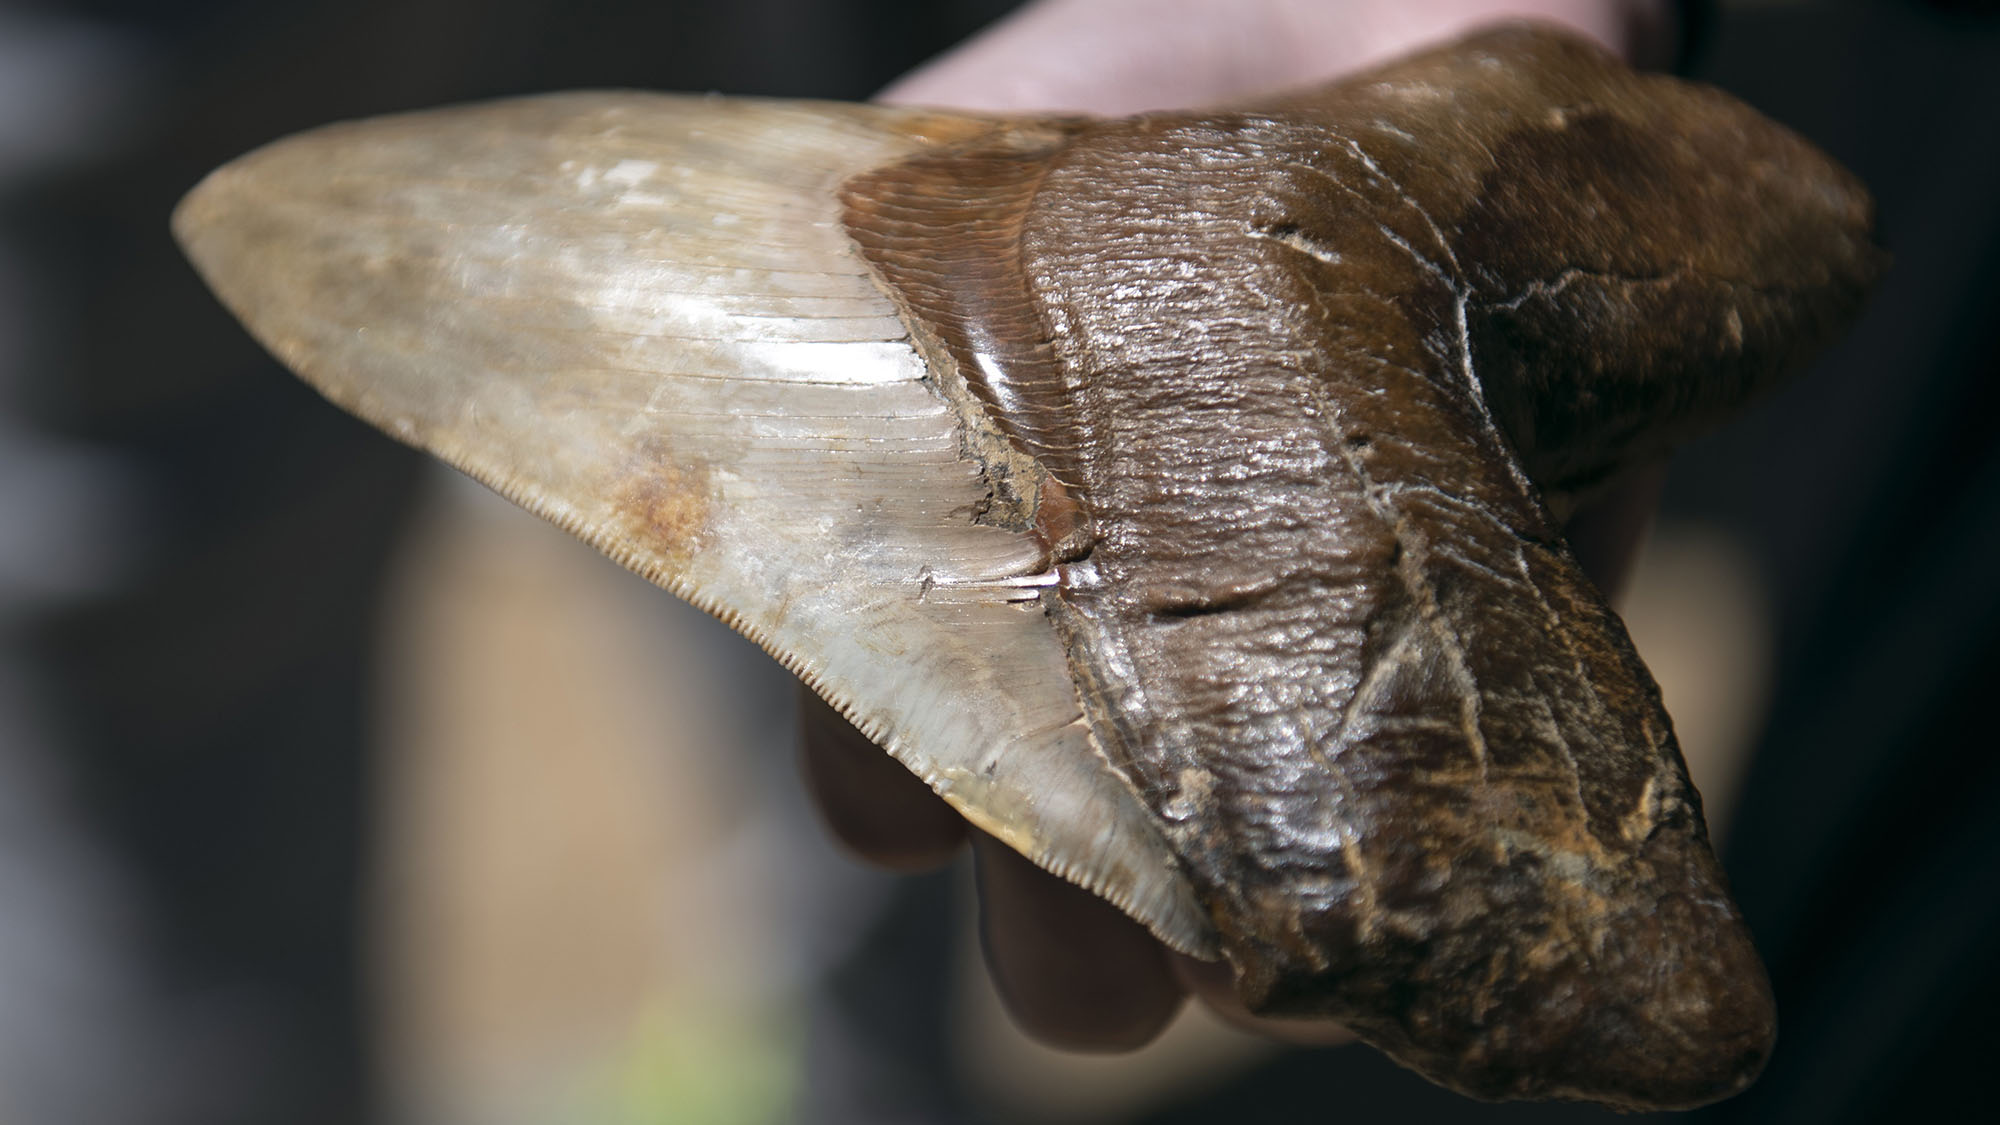 Giant Teeth From Extinct Prehistoric Megalodon Shark Found In Atacama Desert